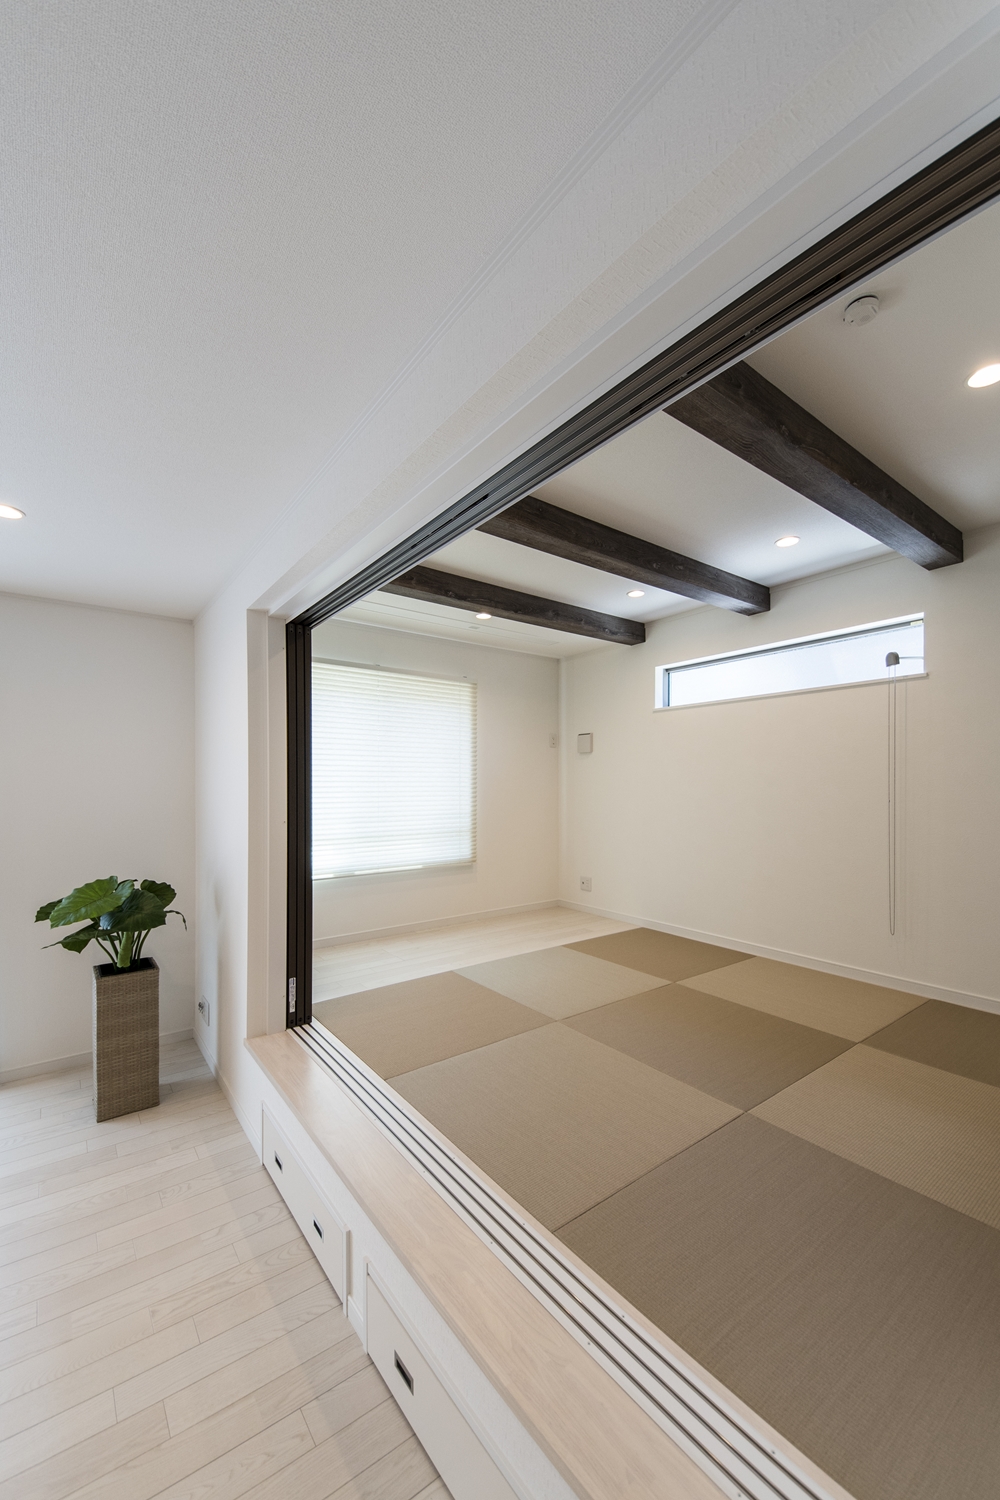 天井に化粧梁を設え、モカベージュ色の畳を市松敷きにした、モダンな空間の小上がり和室。